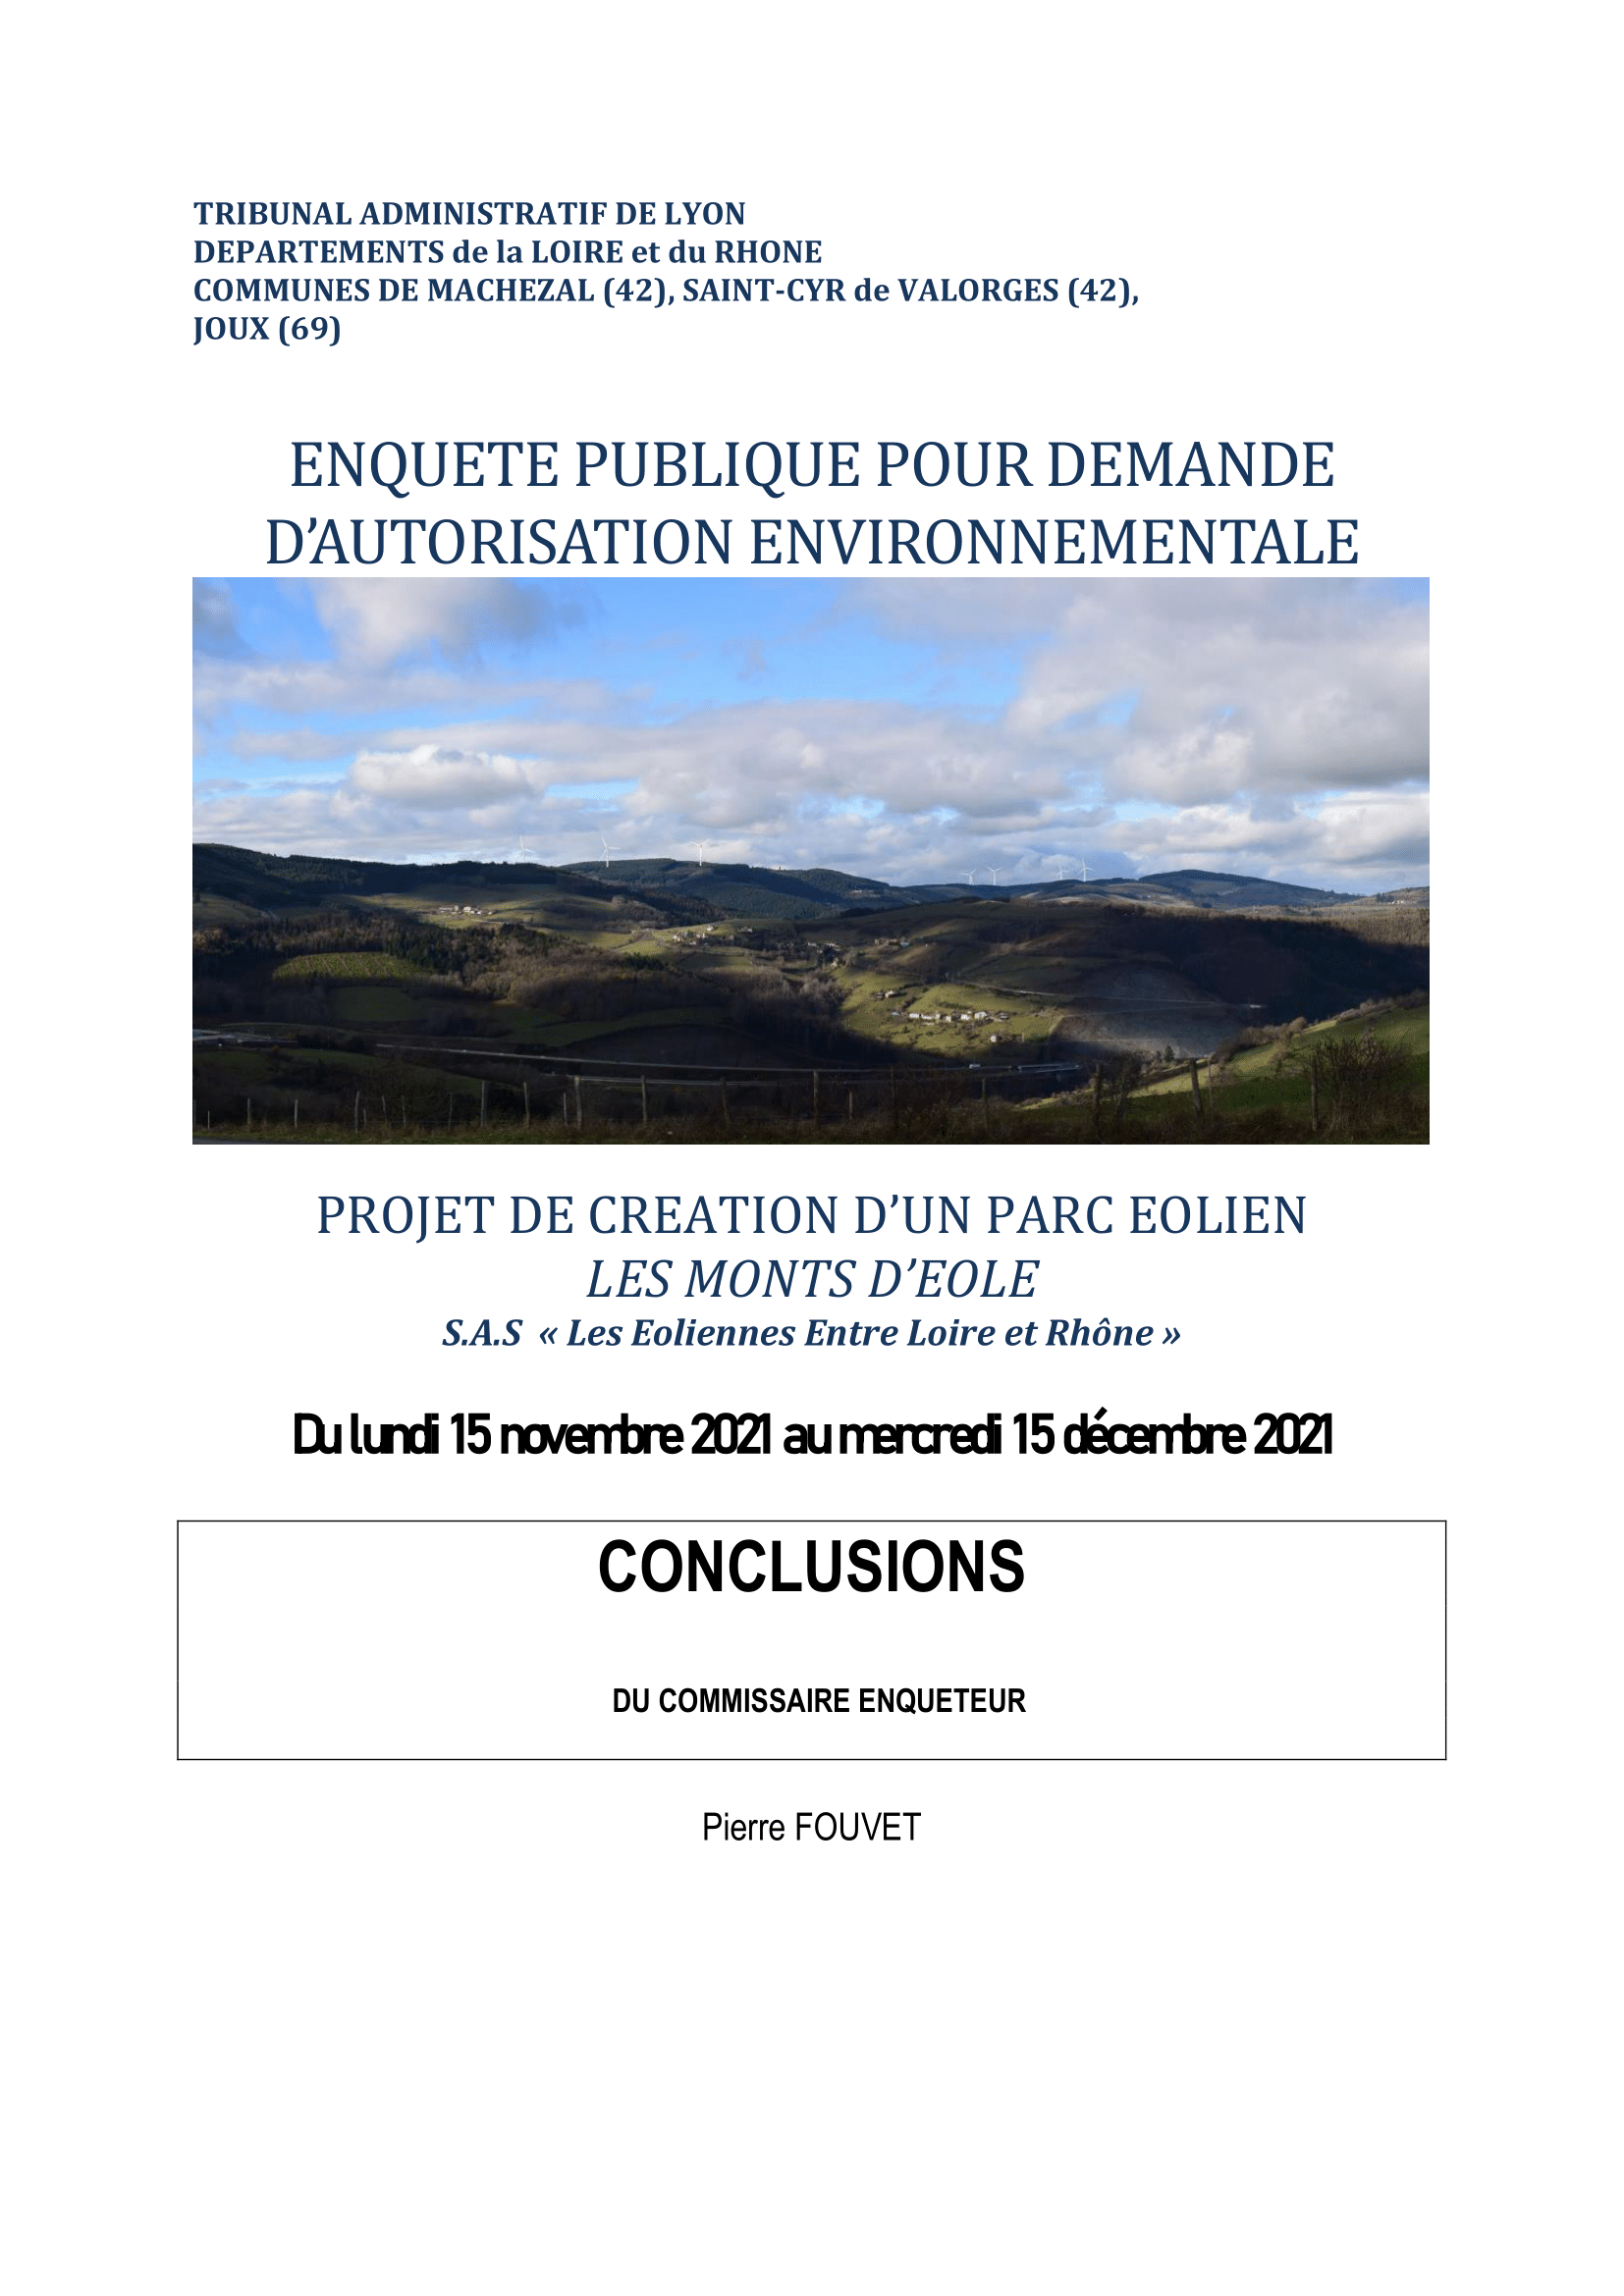  Conclusions Projet éolien Monts dEole 1